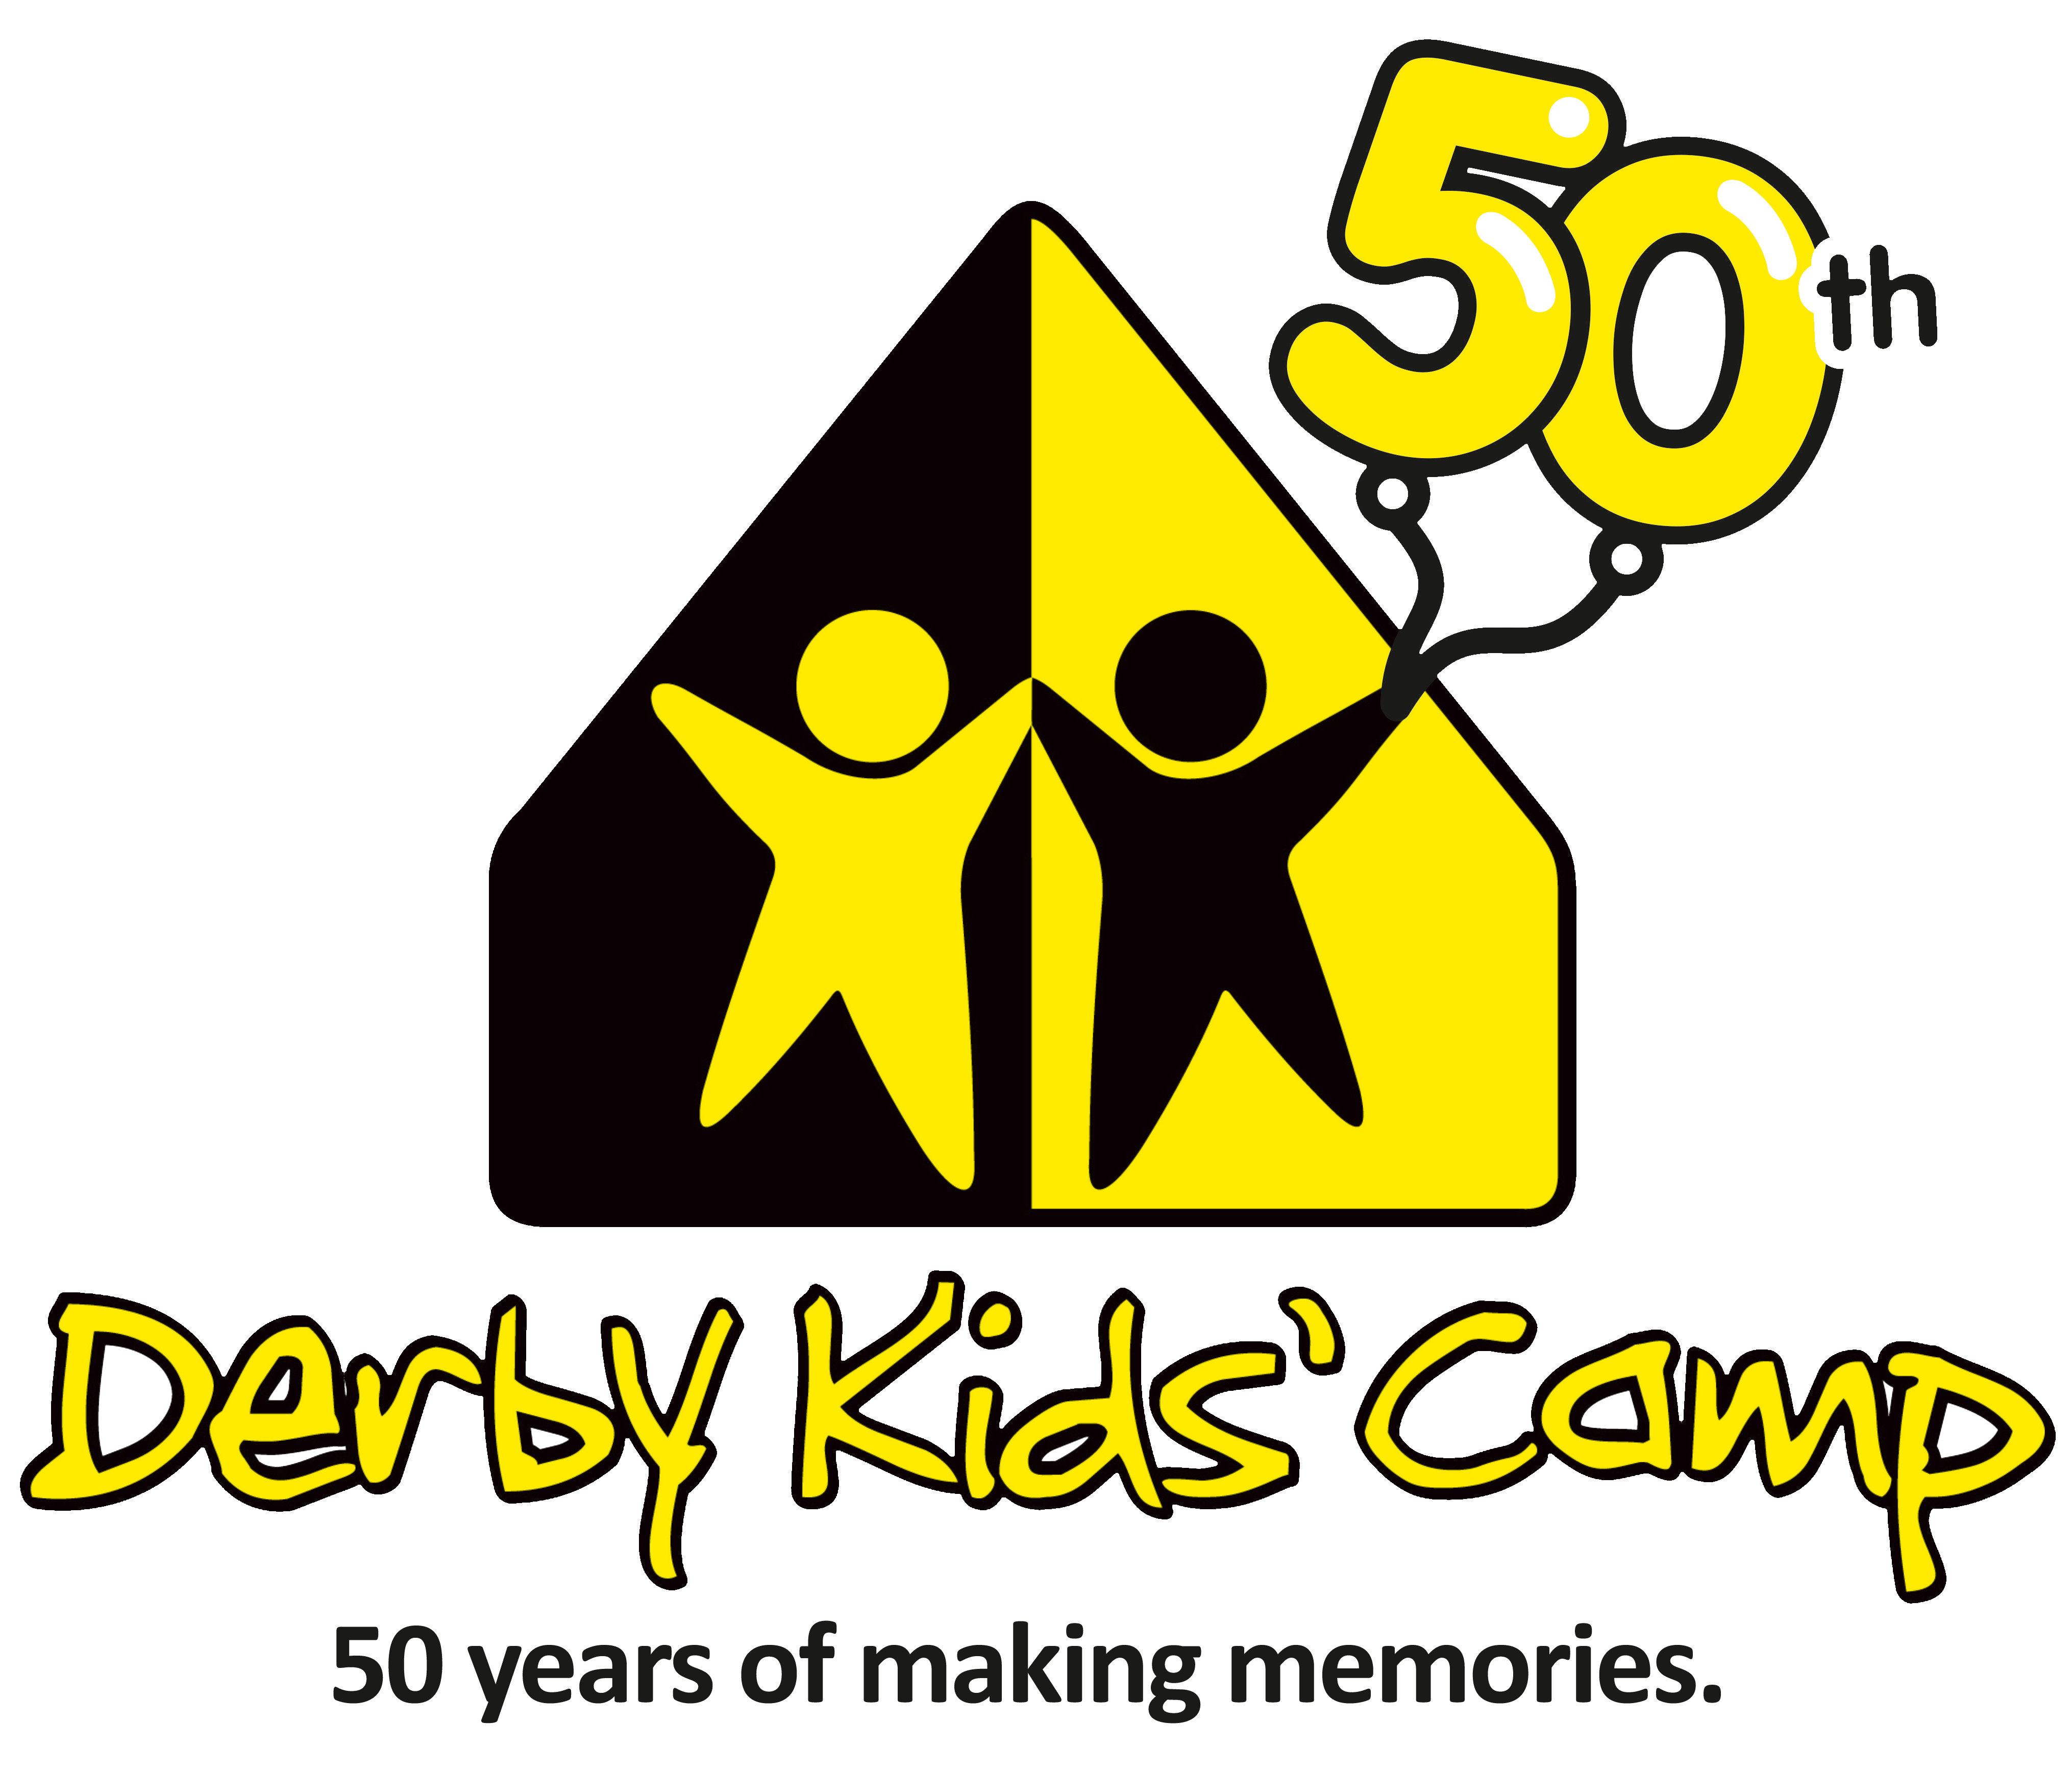 Derby Kids' Camp